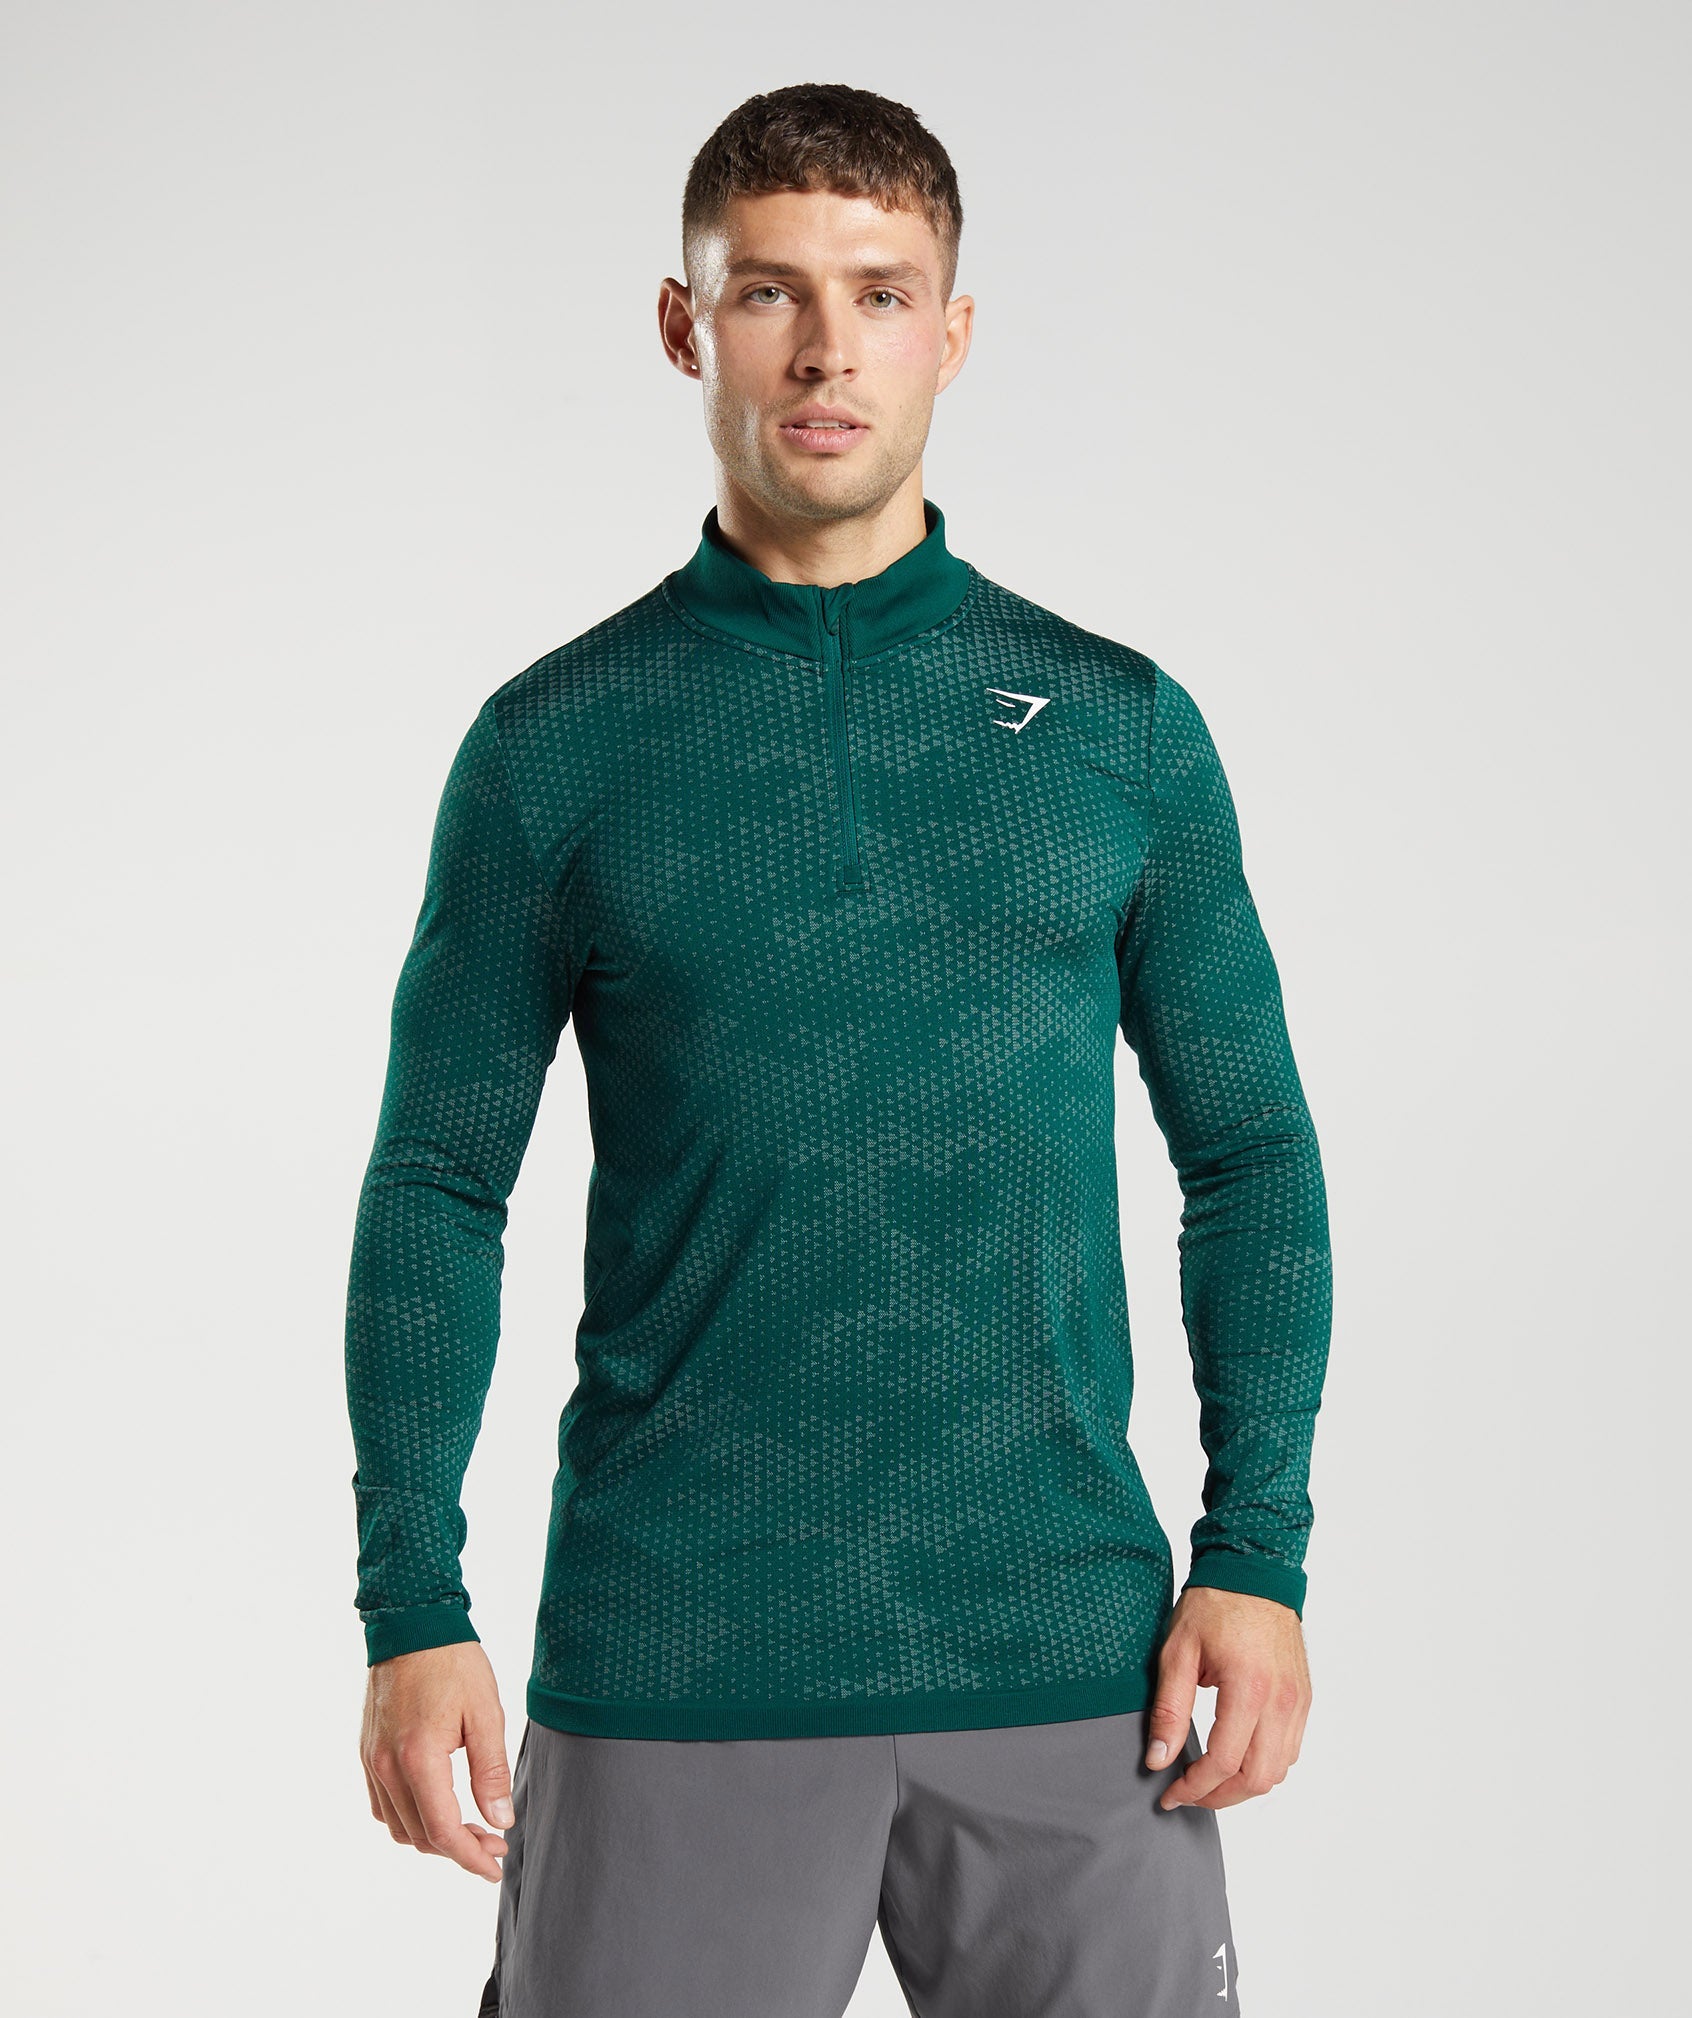 Men's running clothes & running apparel